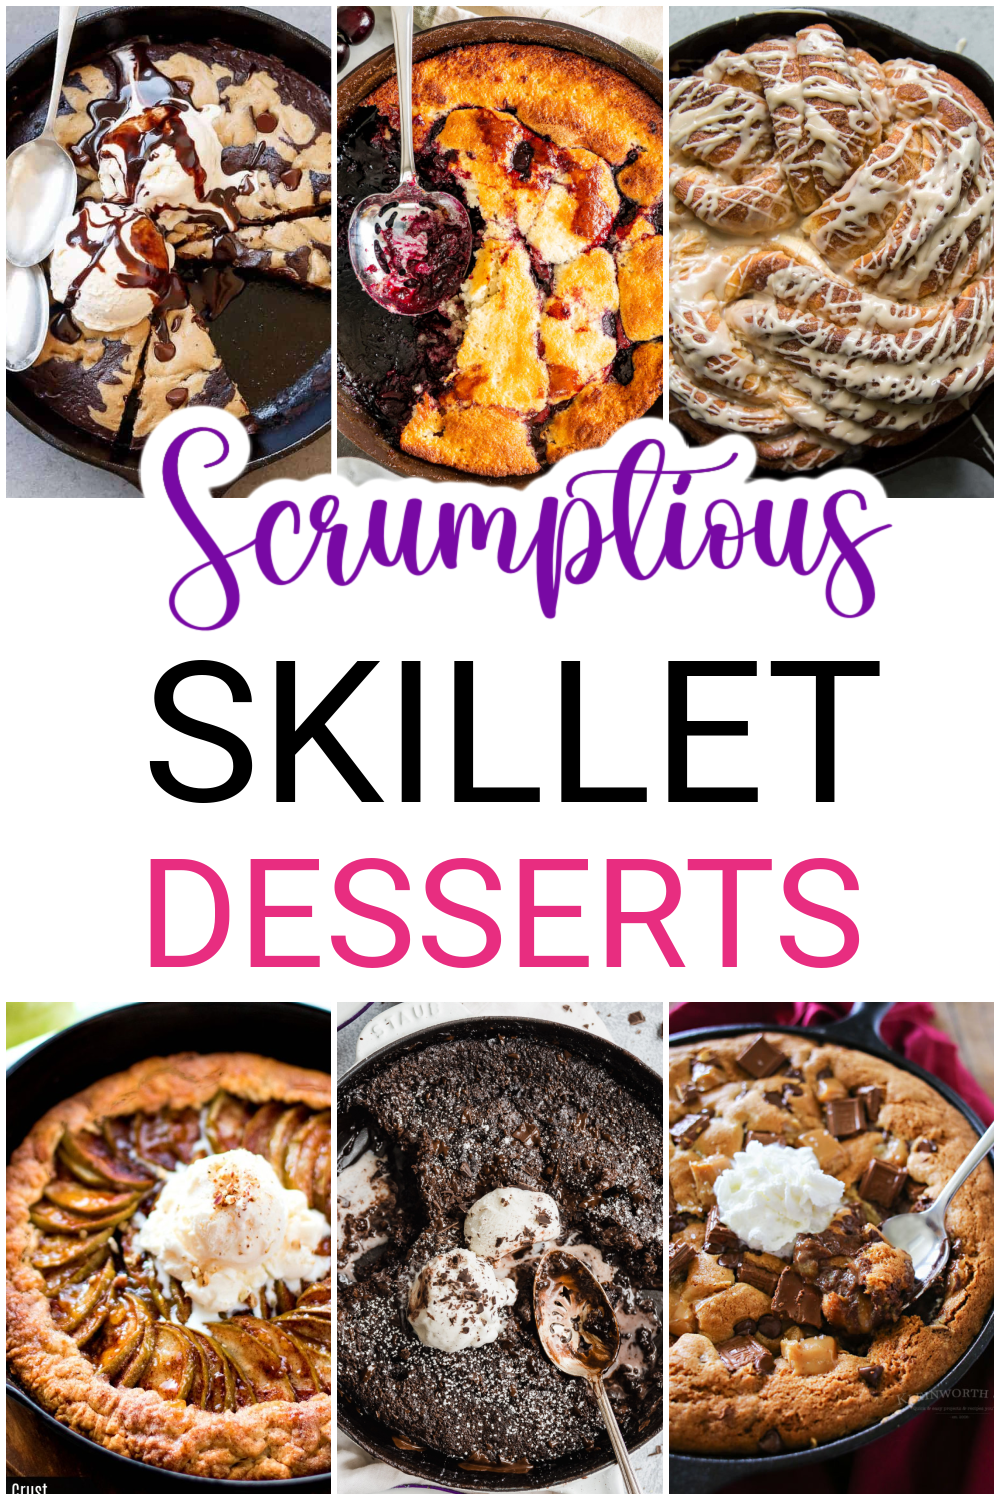 20 Scrumptious Skillet Desserts